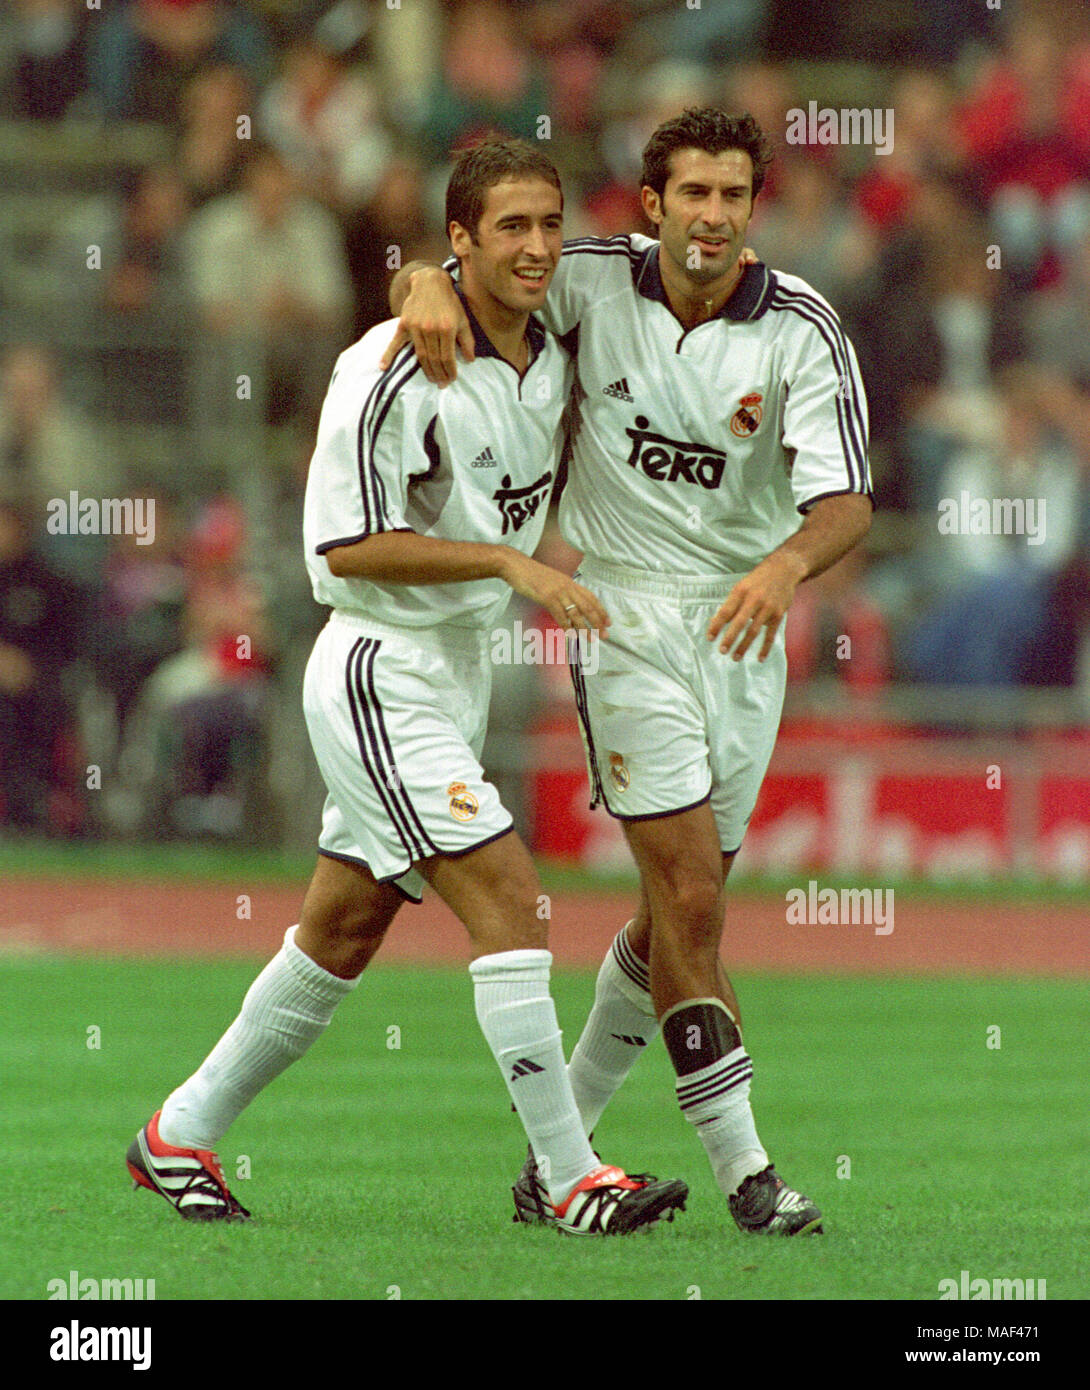 Lo Stadio Olimpico di Monaco di Baviera, Germania 5.8.2000, calcio torneo  internazionale: Raul, Luis FIGO, Real Madrid Foto stock - Alamy